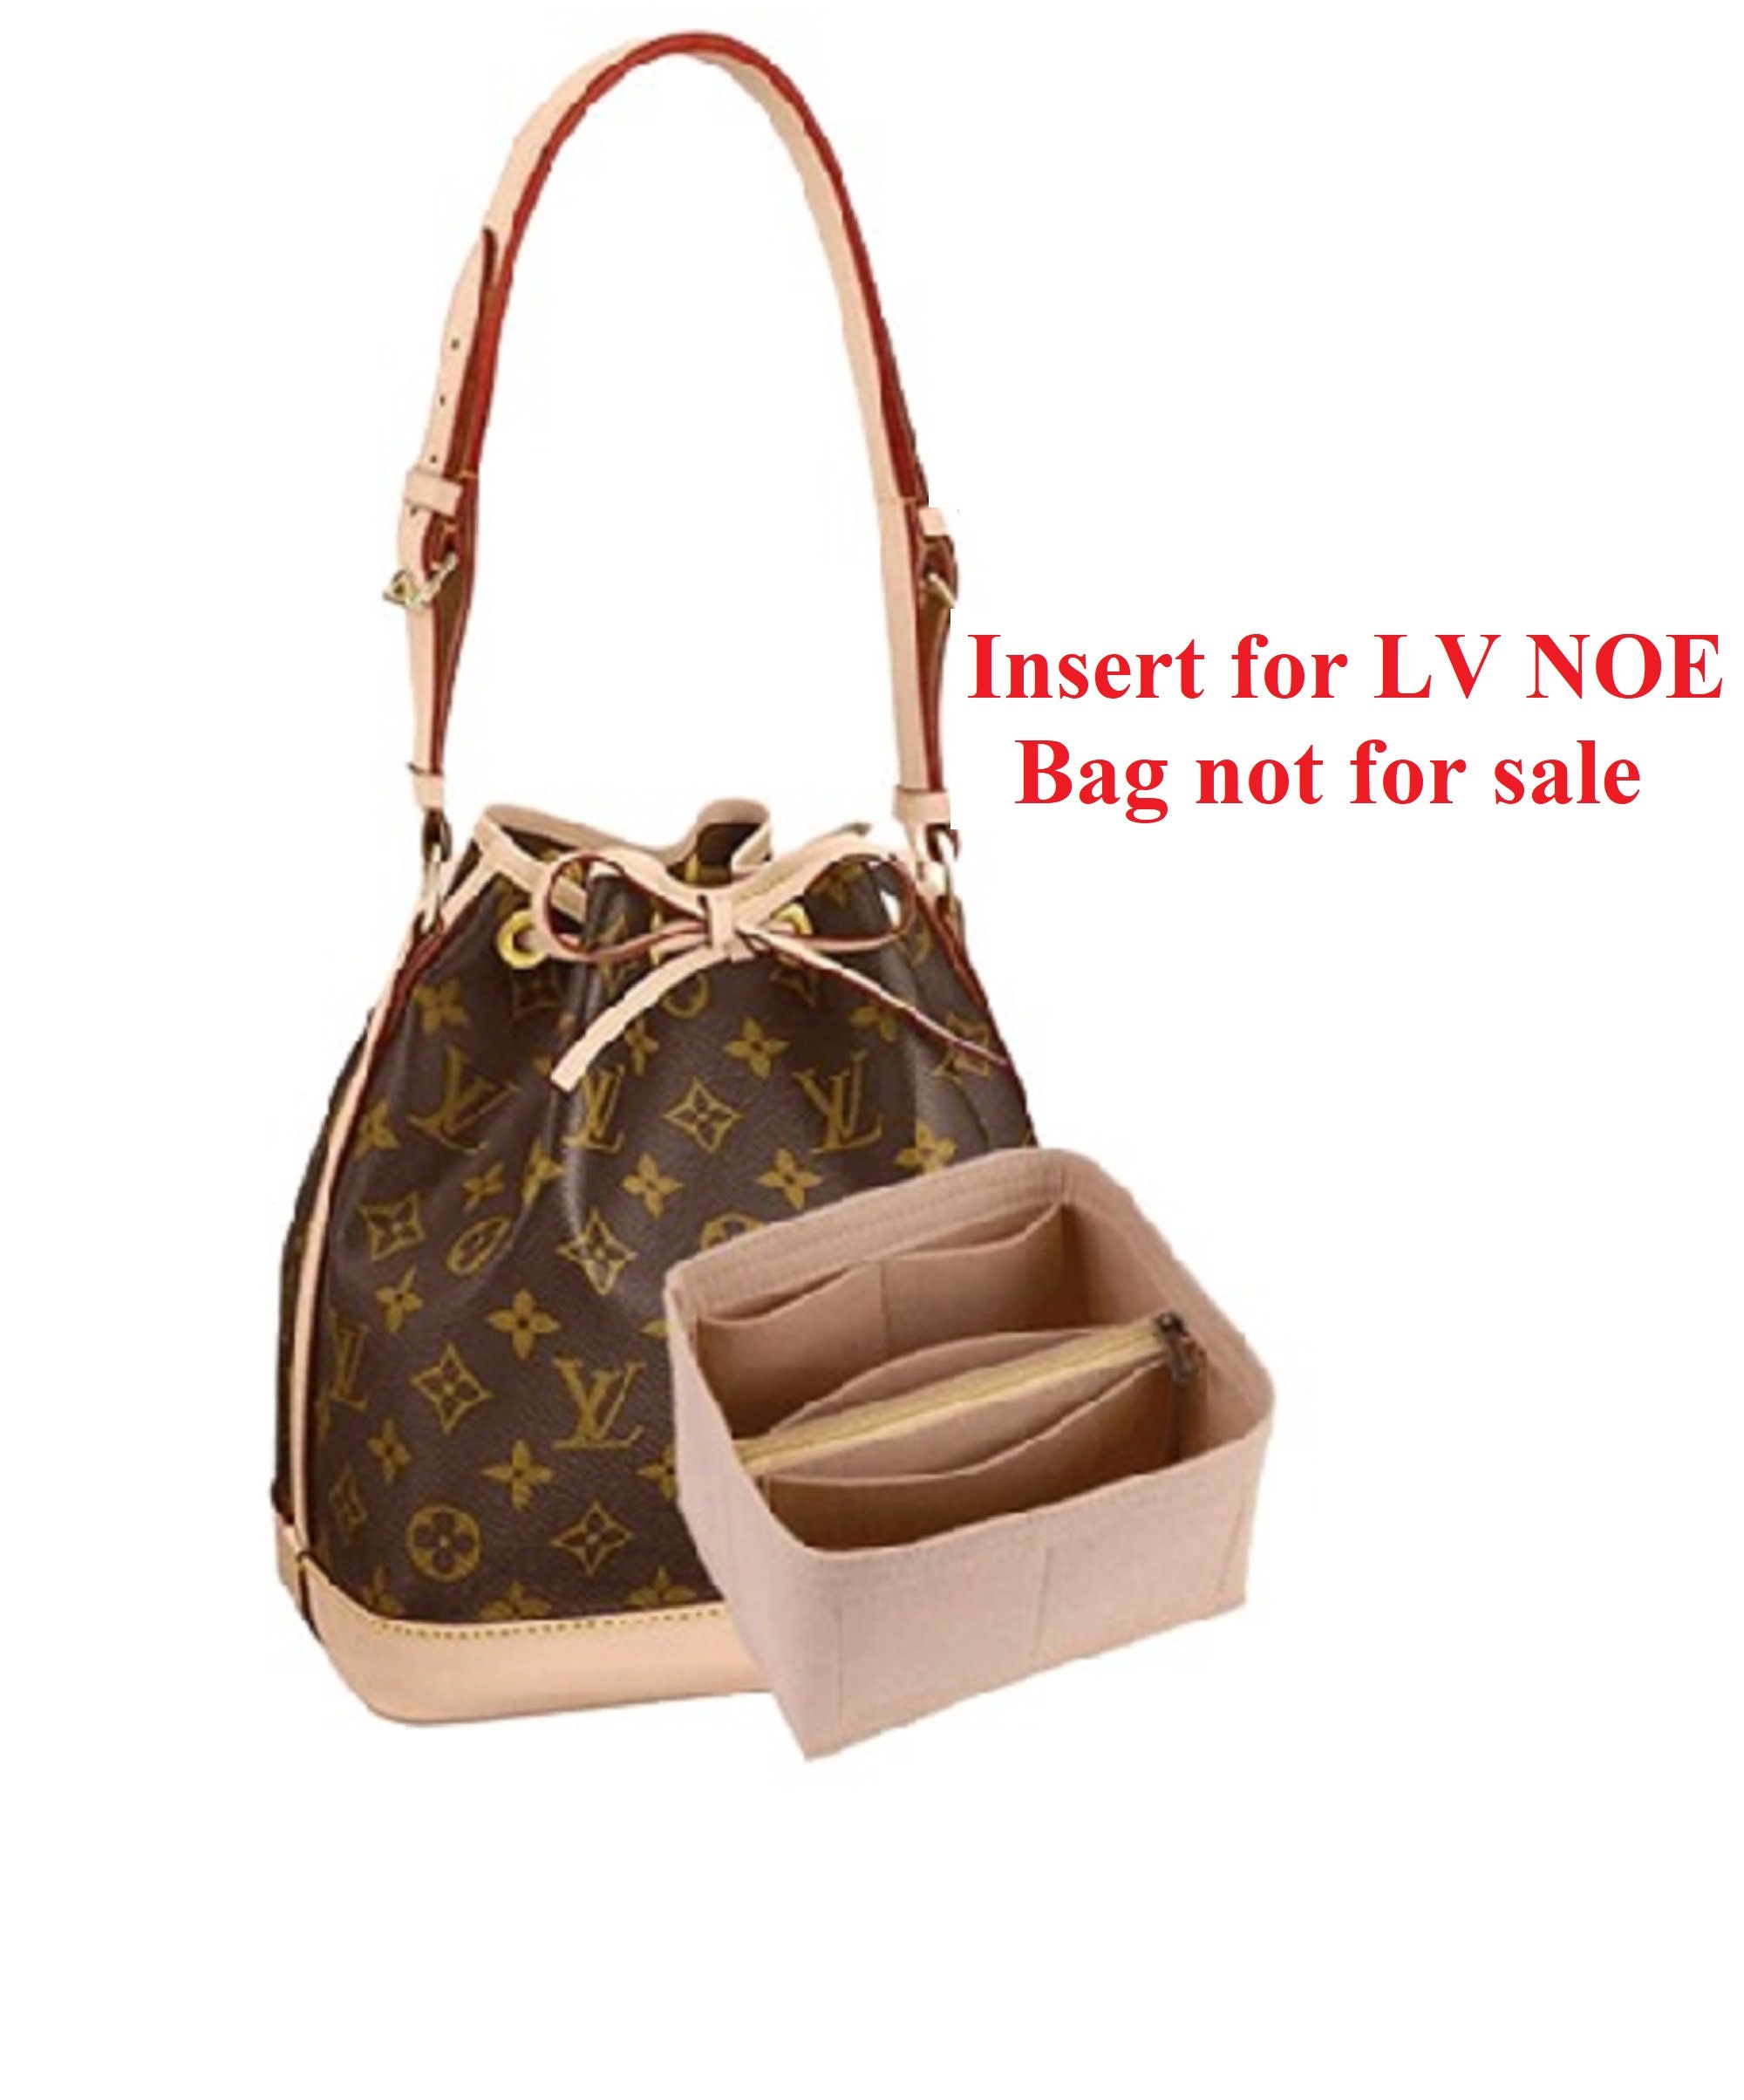 Buy Noe Louis Vuitton Online In India -  India